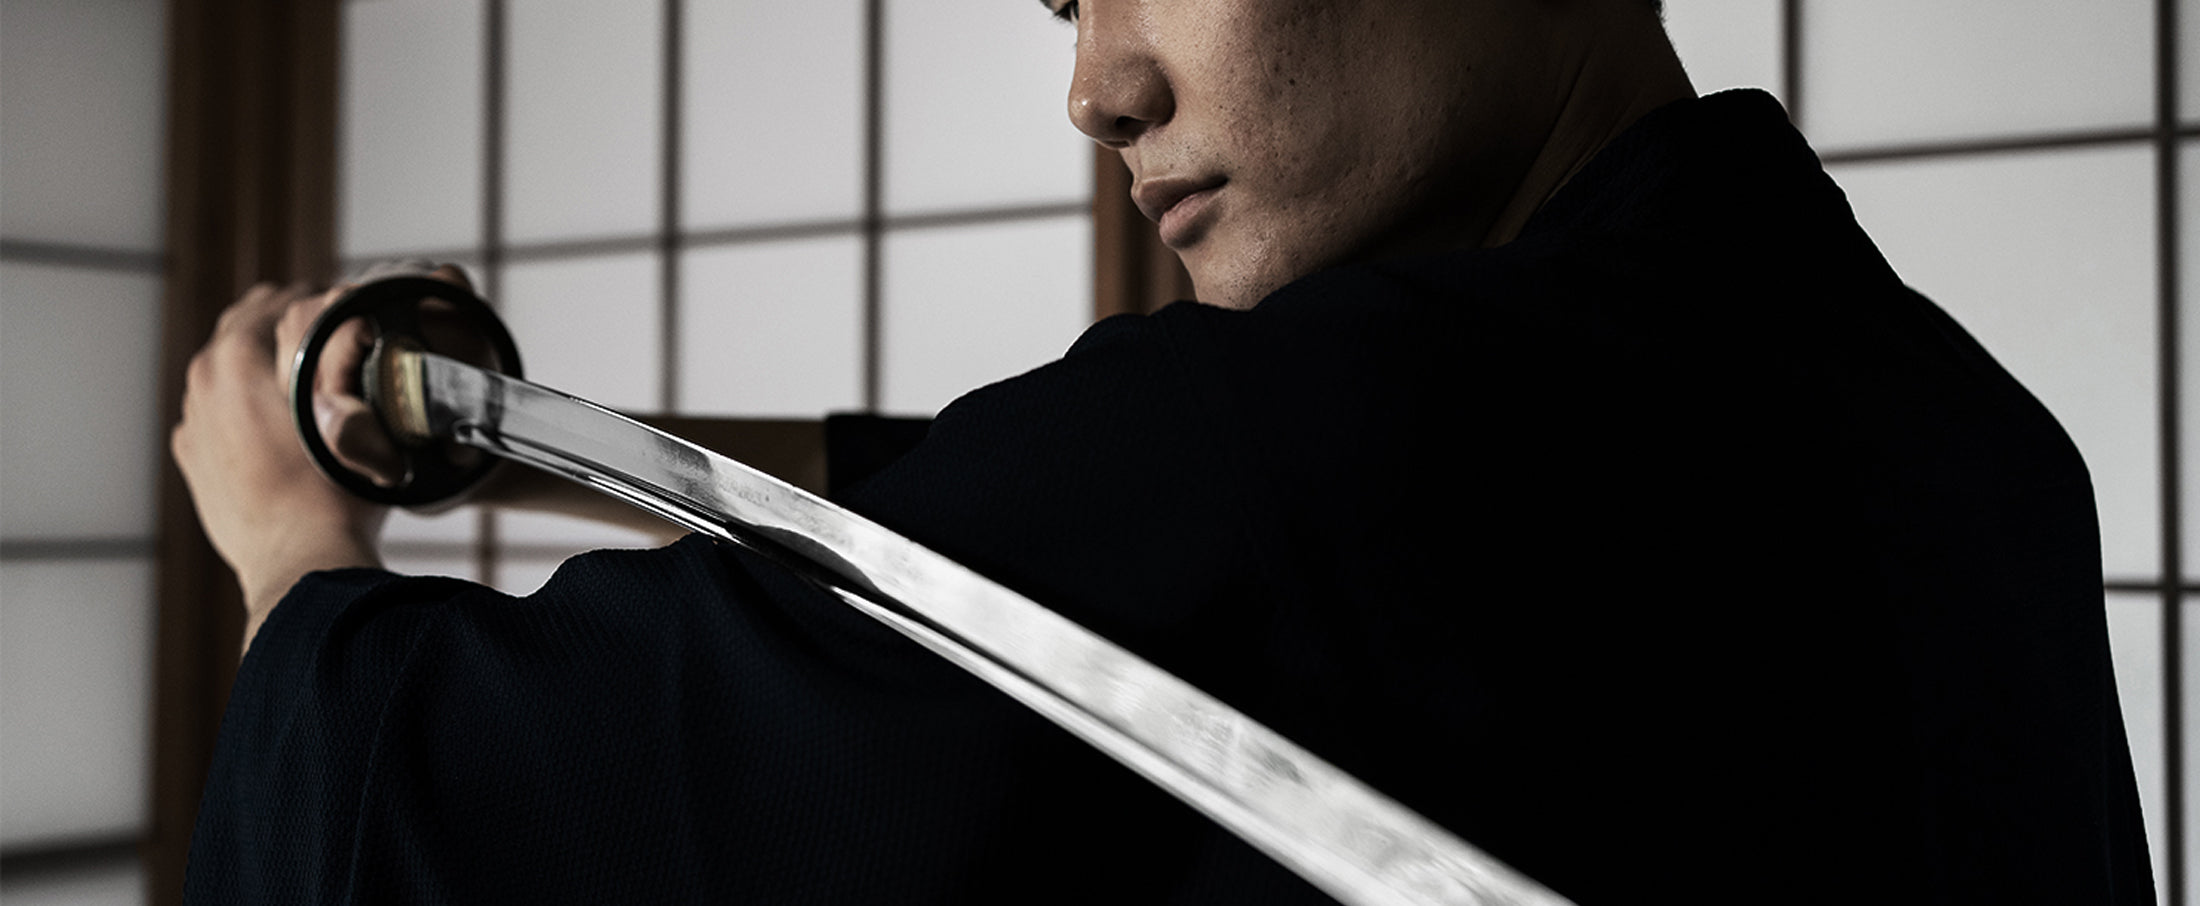 Quid de la détention d'un katana, espèce de sabre japonais très tranchant  ?